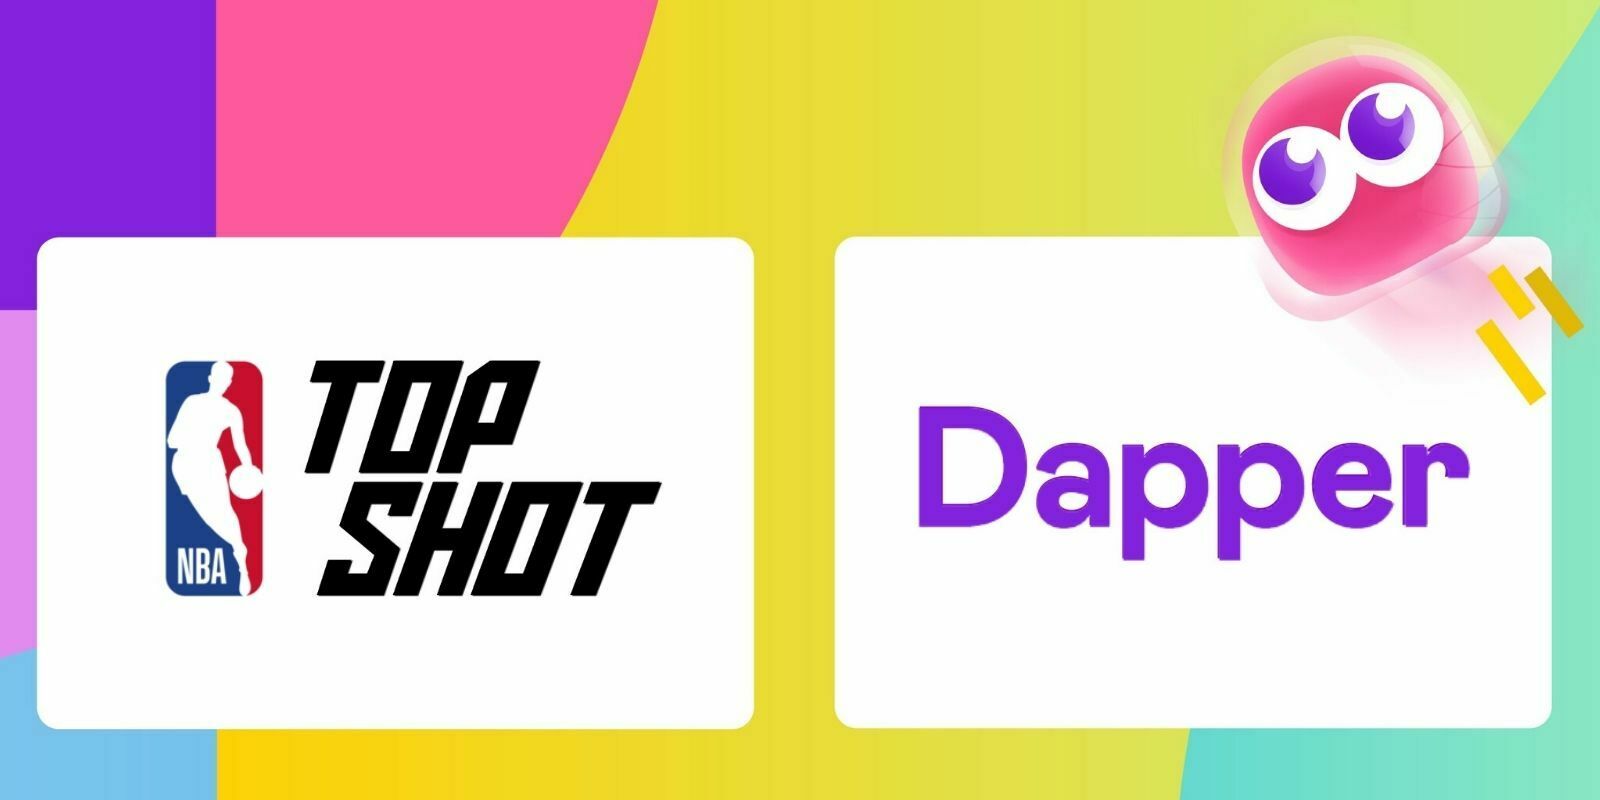 Le mastodonte des NFTs Dapper Labs lève 305 millions de dollars pour développer son application NBA Top Shot